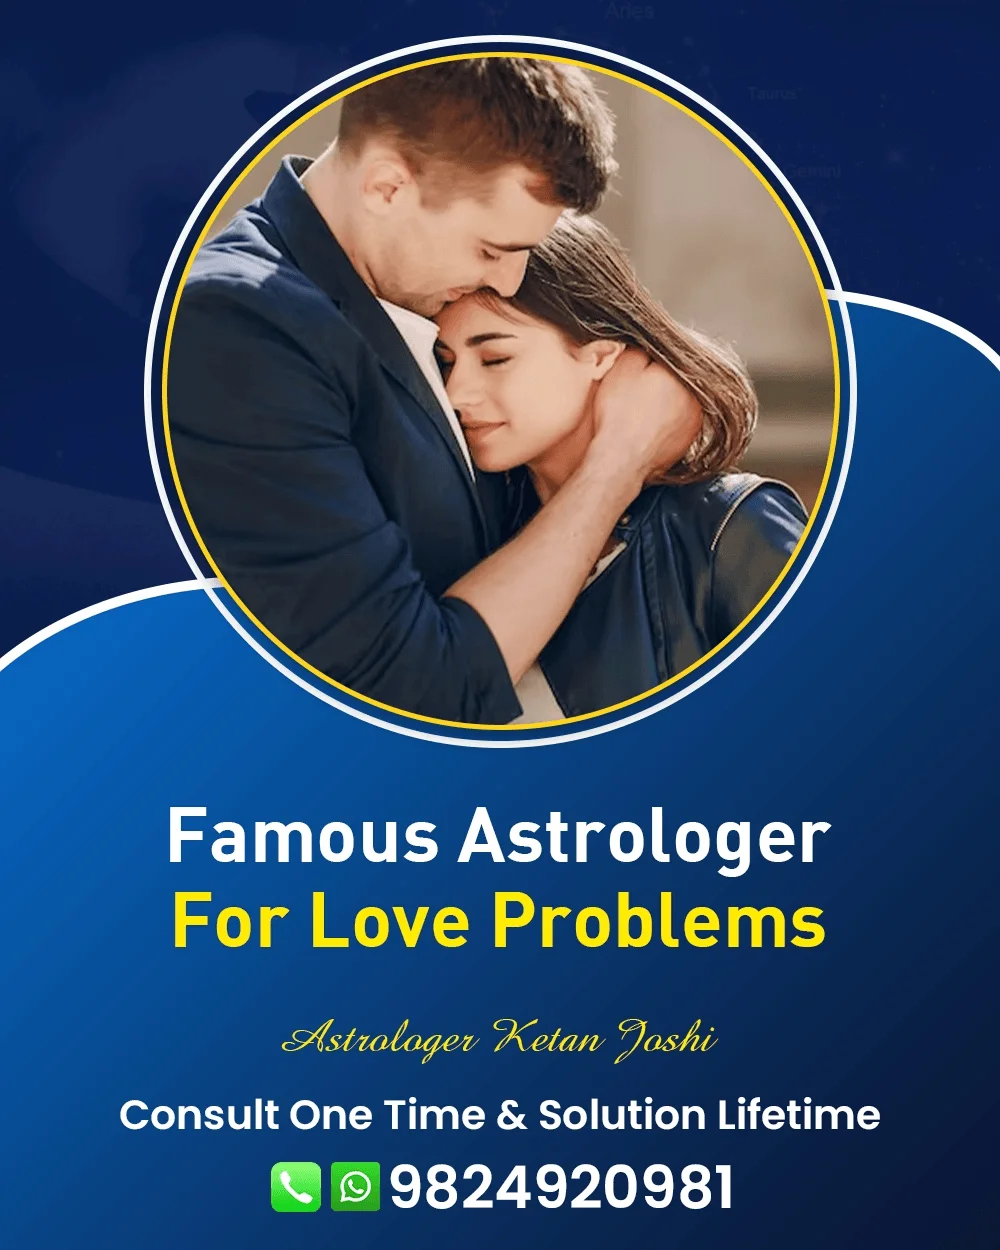 Love Problem Astrologer In Nainital